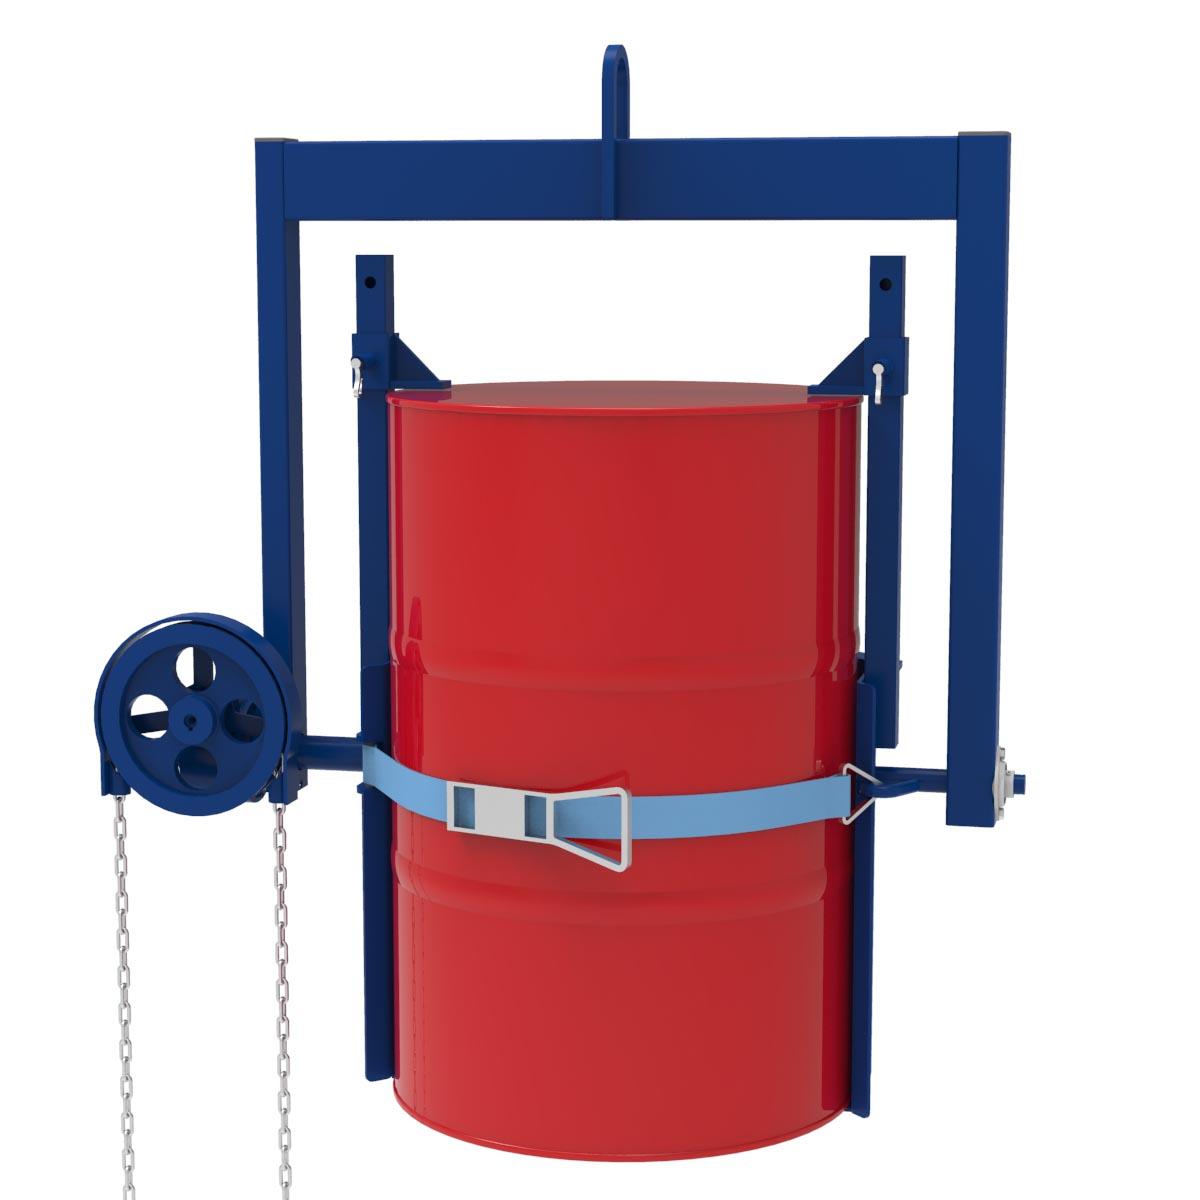 Fass-Kipptraverse mit Aufnahmekorb für stehende Stahl- und Kunststofffässer